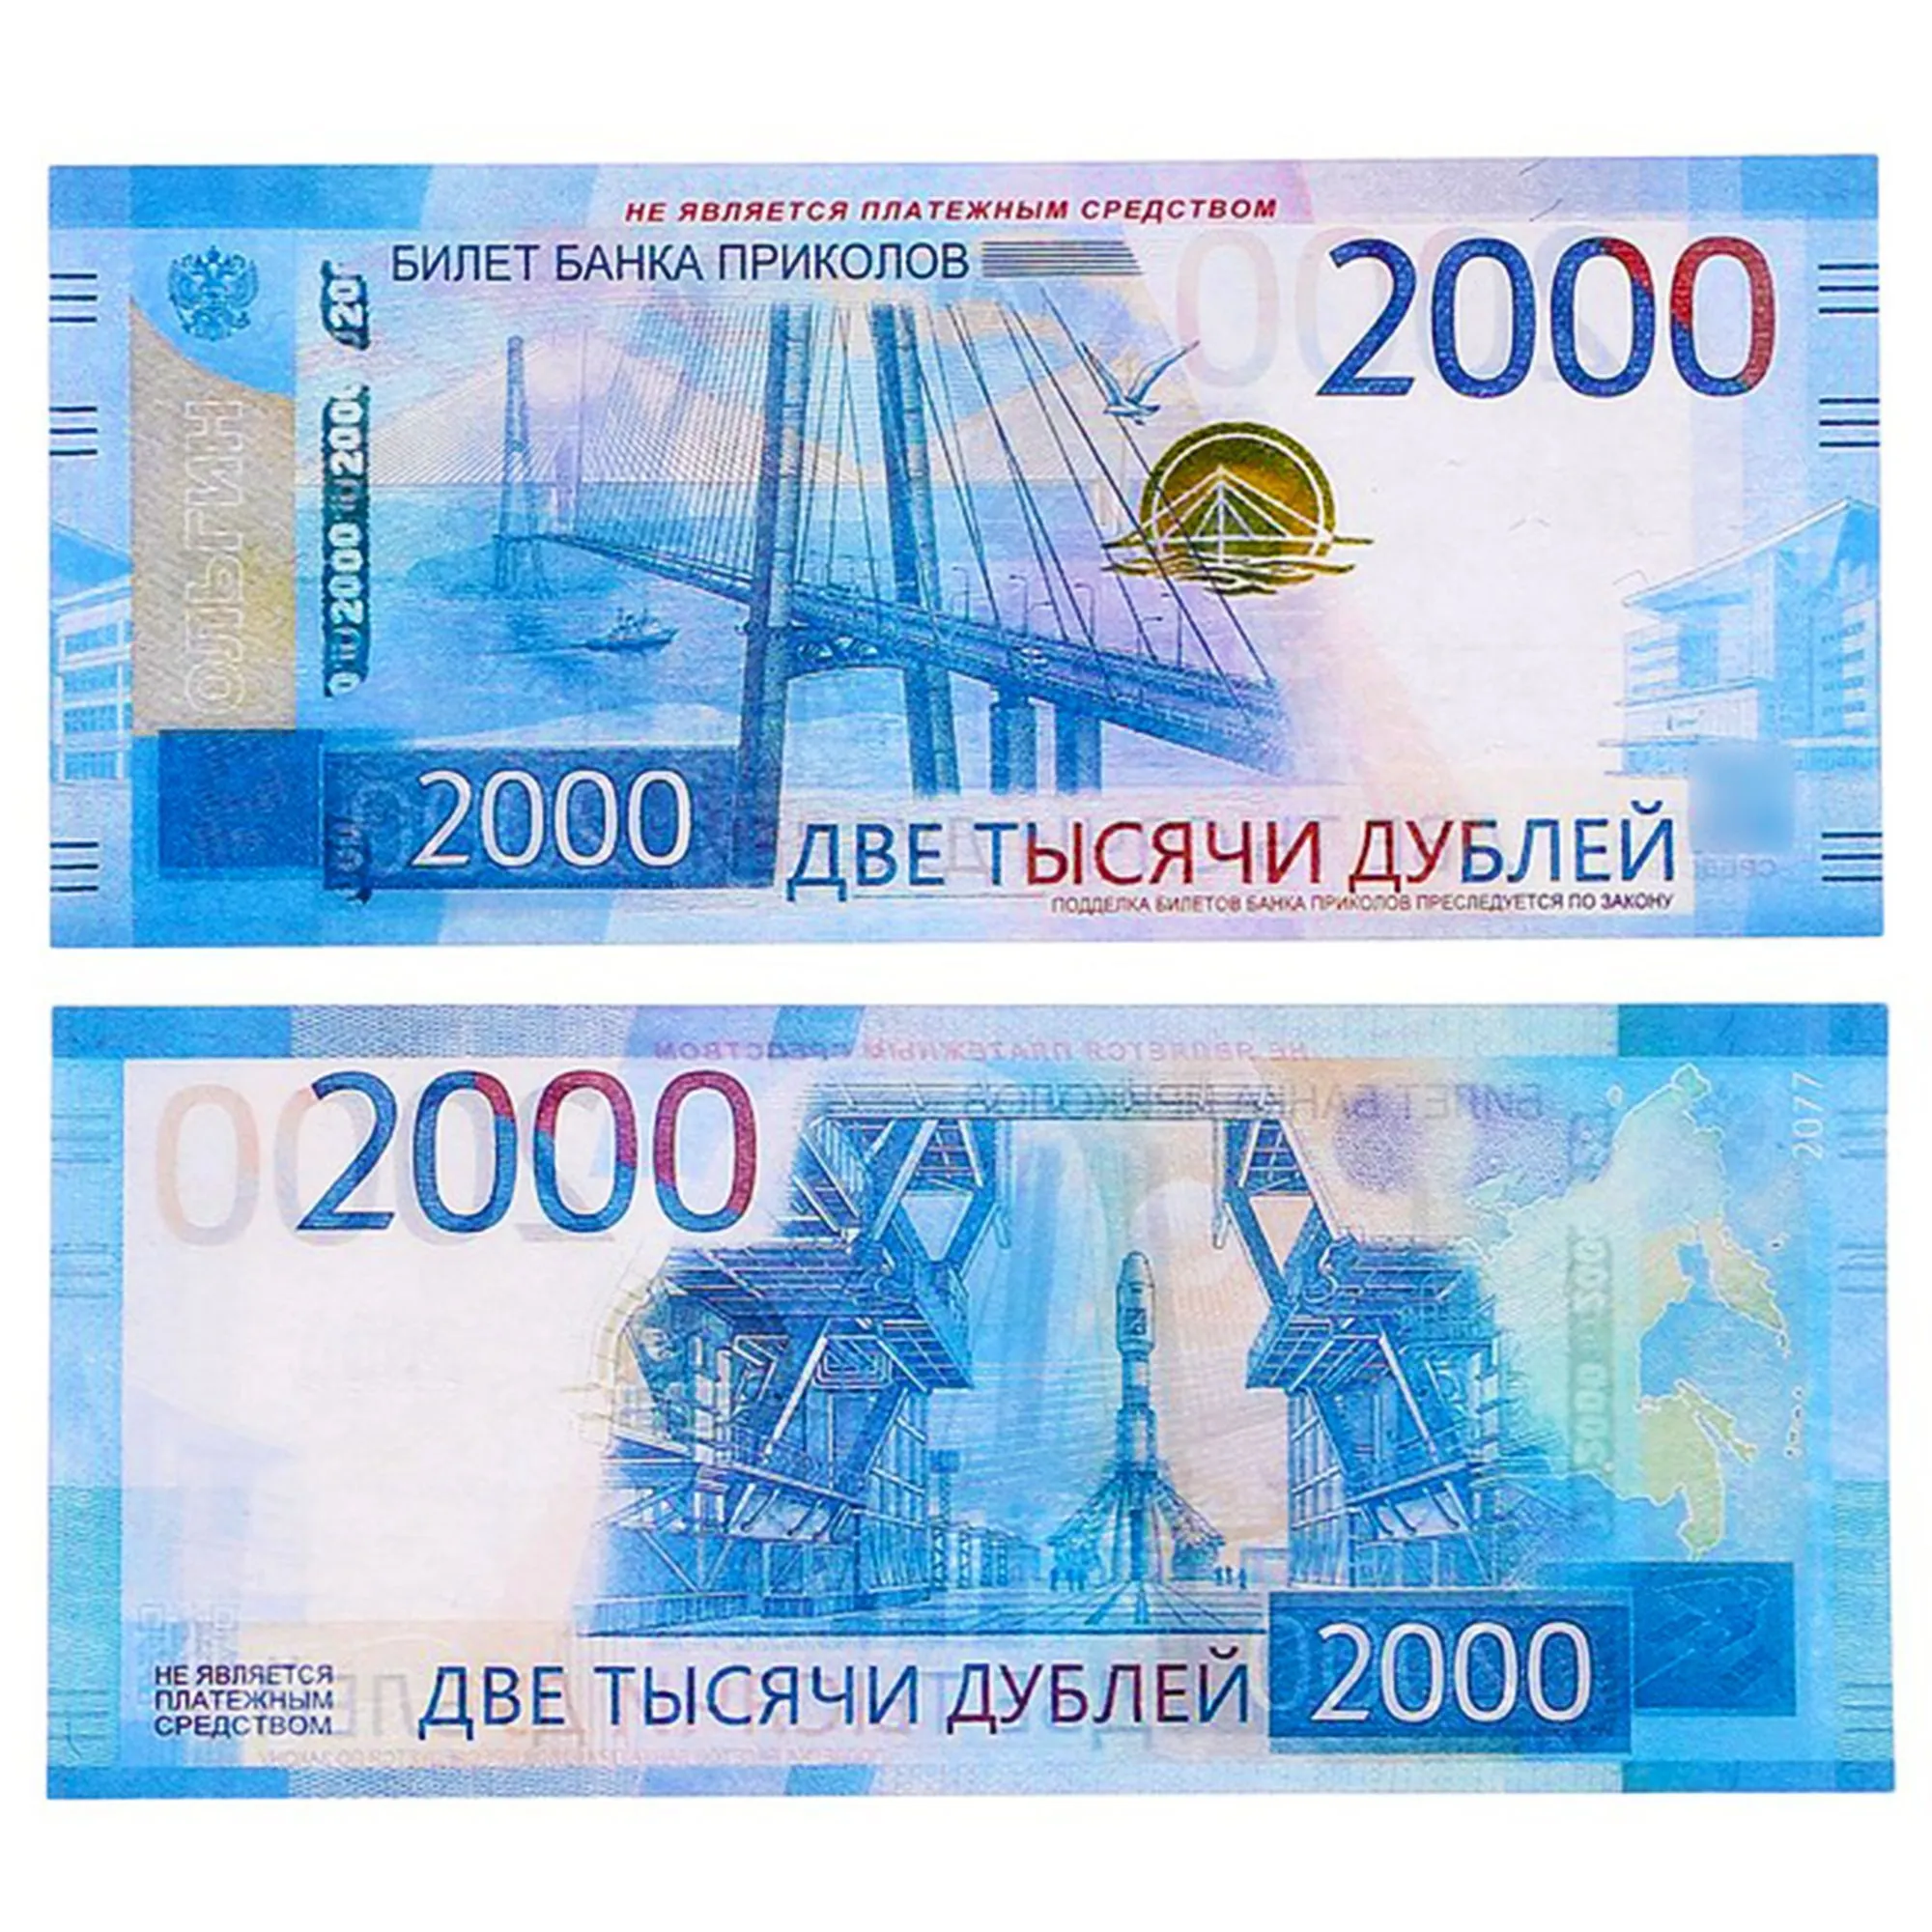 Купюры 2000 года. Купюра 2000. 2000 Рублей банкнота. 2000 Рублей банкнота новая. Шуточные деньги.